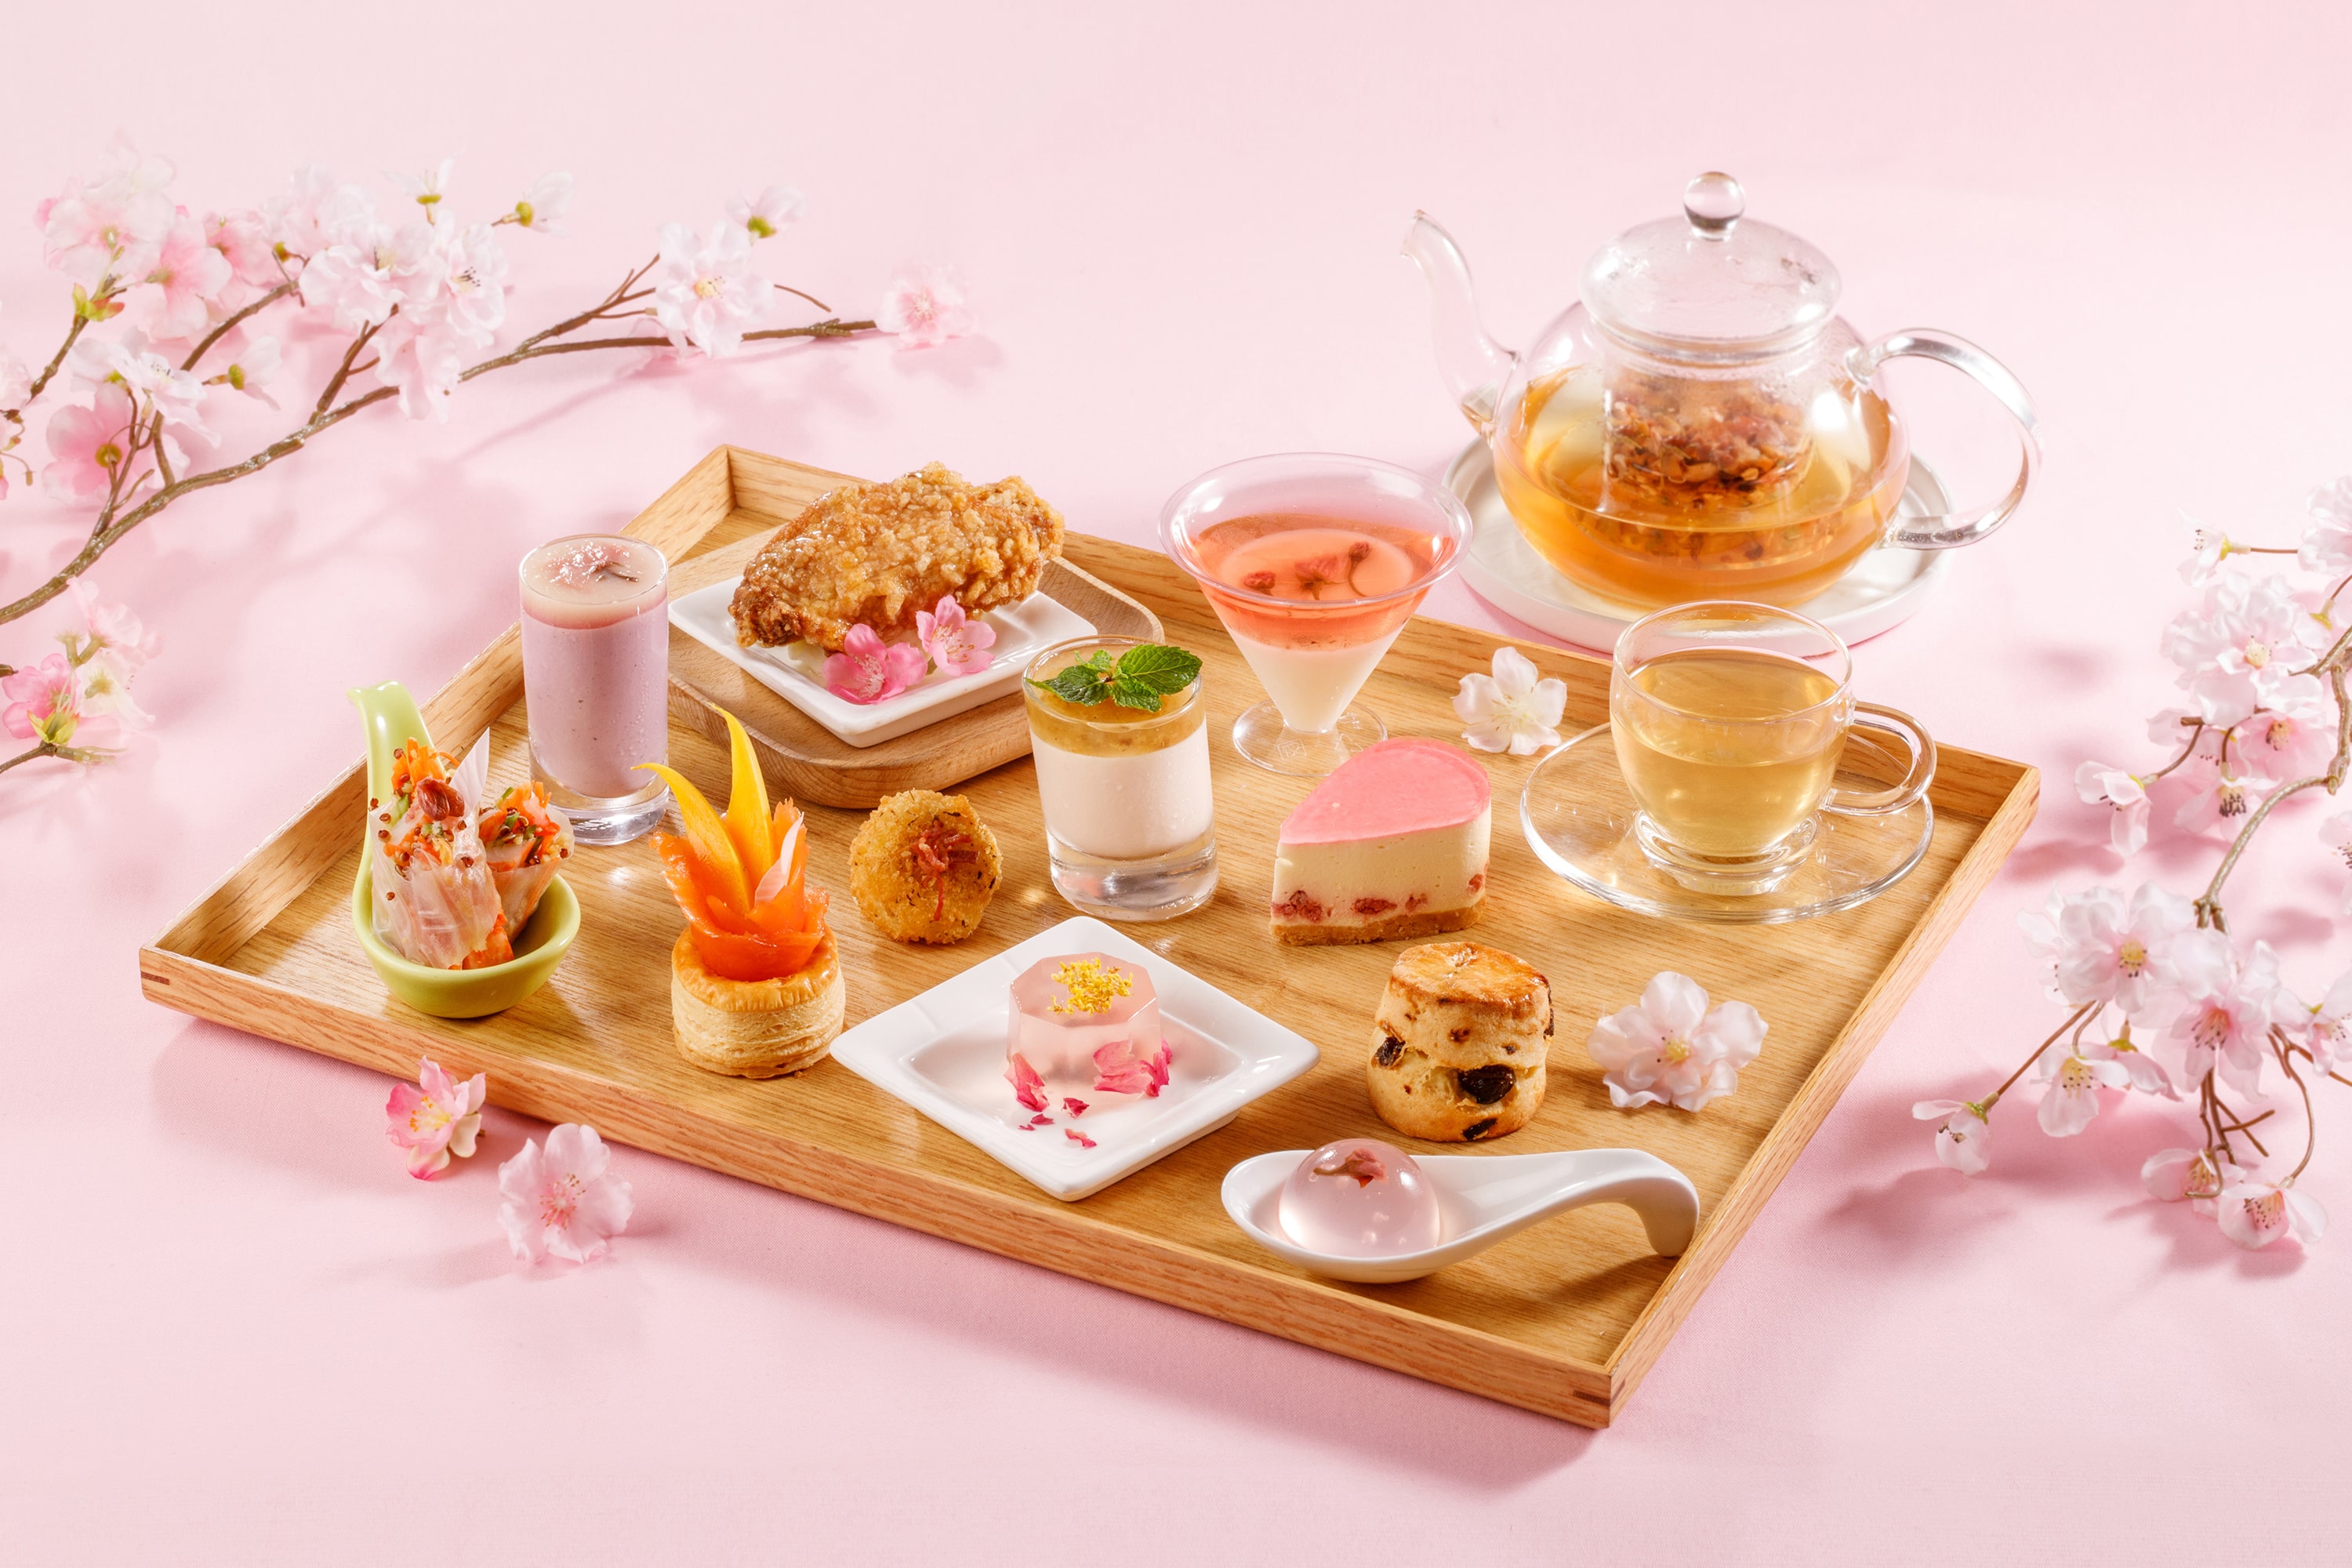 Sakura Afternoon Tea Set at Park Hotel Hong Kong